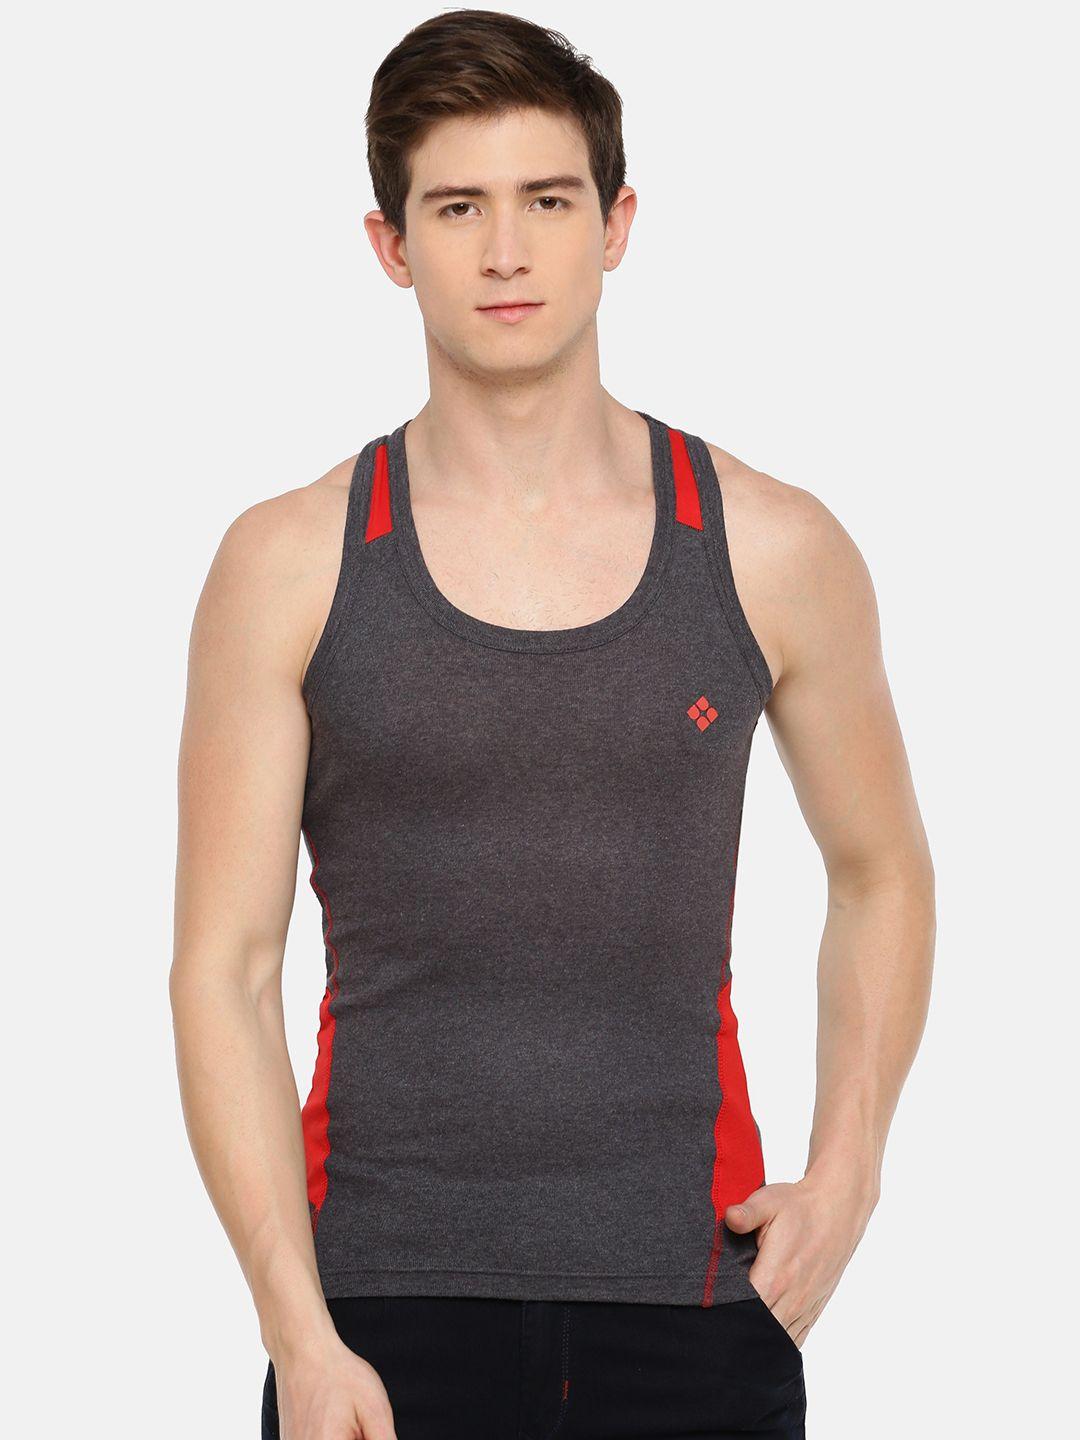 dollar-bigboss-assorted-cotton-gym-innerwear-vest